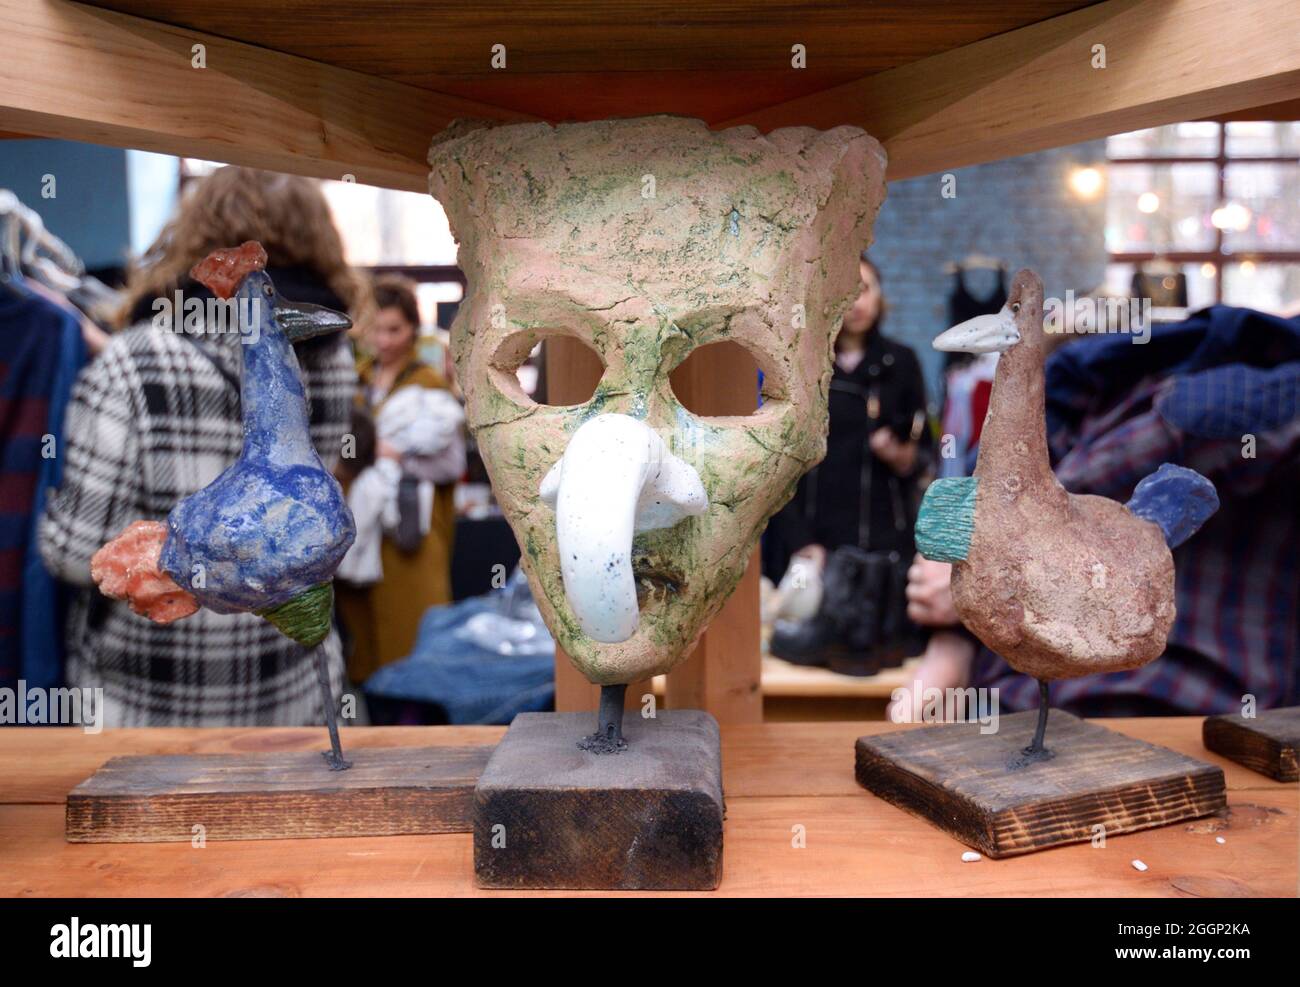 Masque de gypse vintage et souvenirs mis en vente pendant le marché de chiffon. Banque D'Images